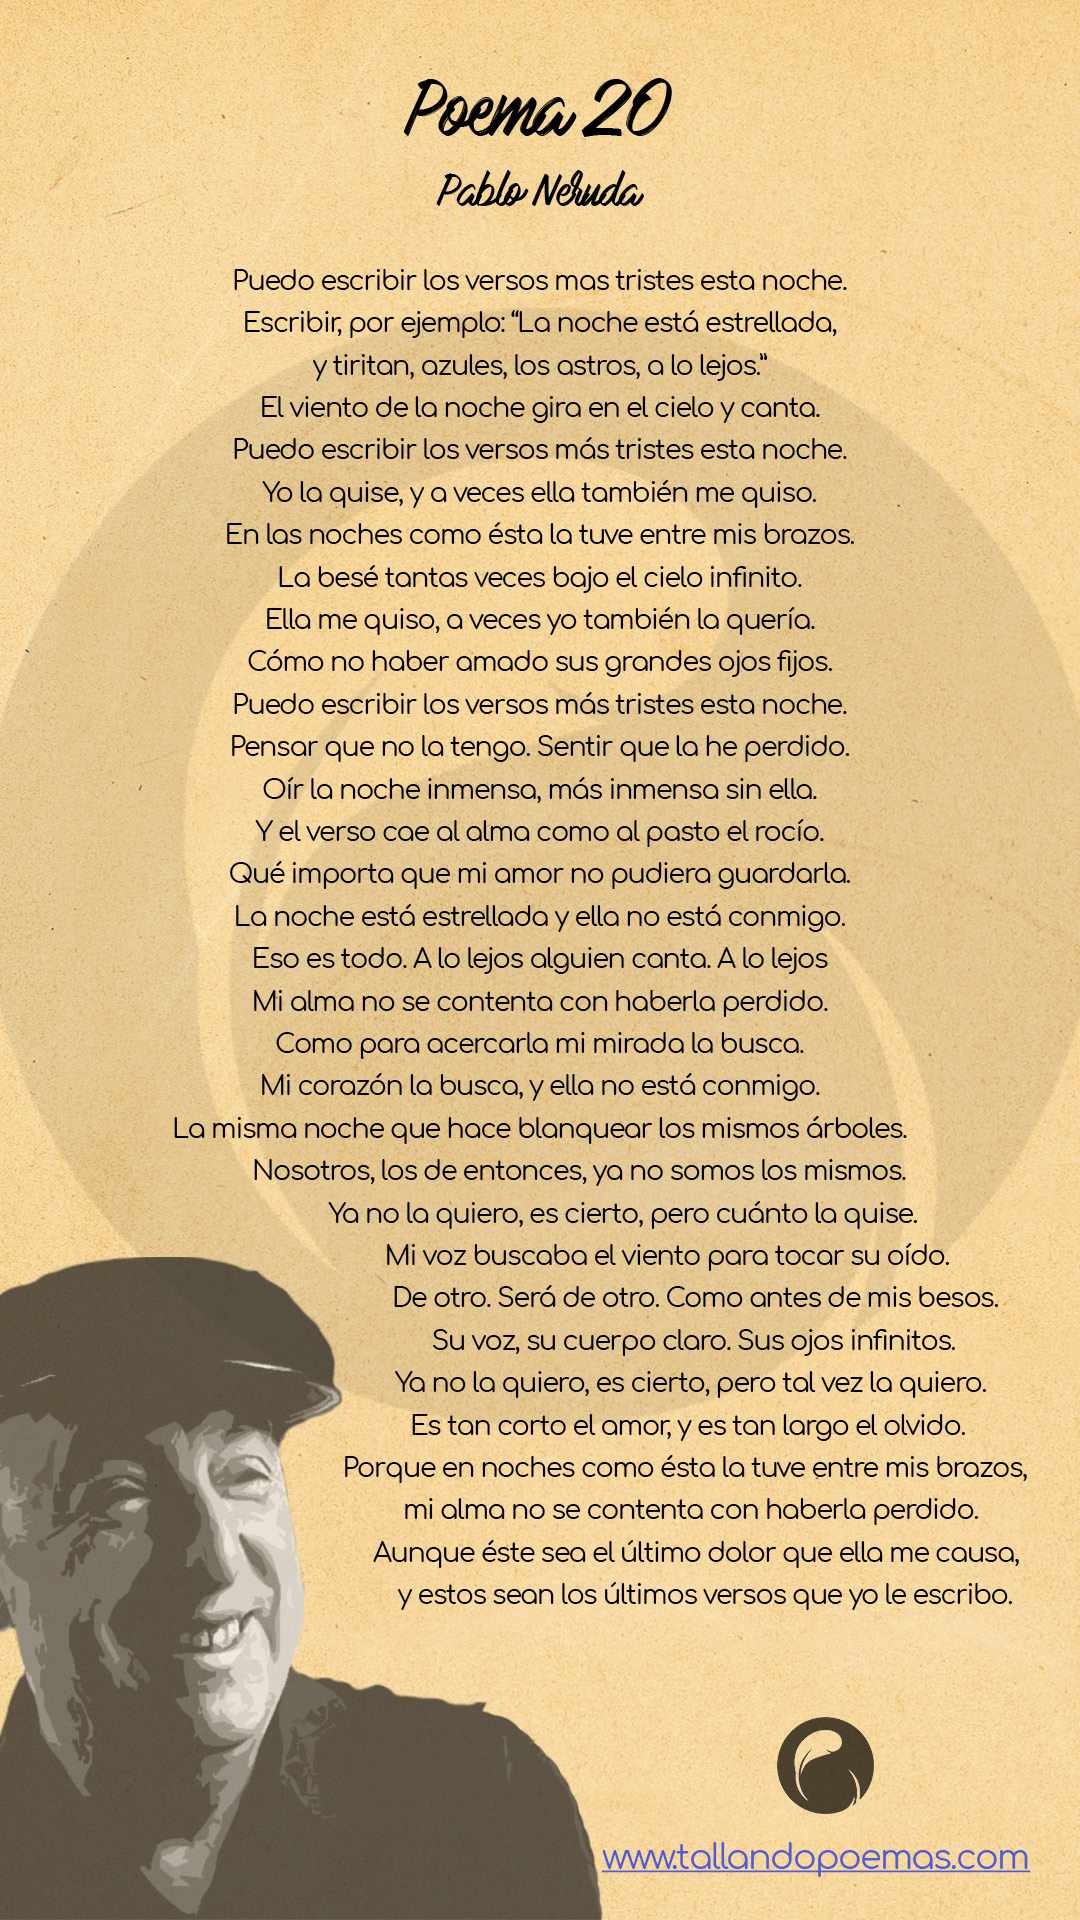 Análisis detallado del Poema 20 de Pablo Neruda: Un canto al amor y la melancolía